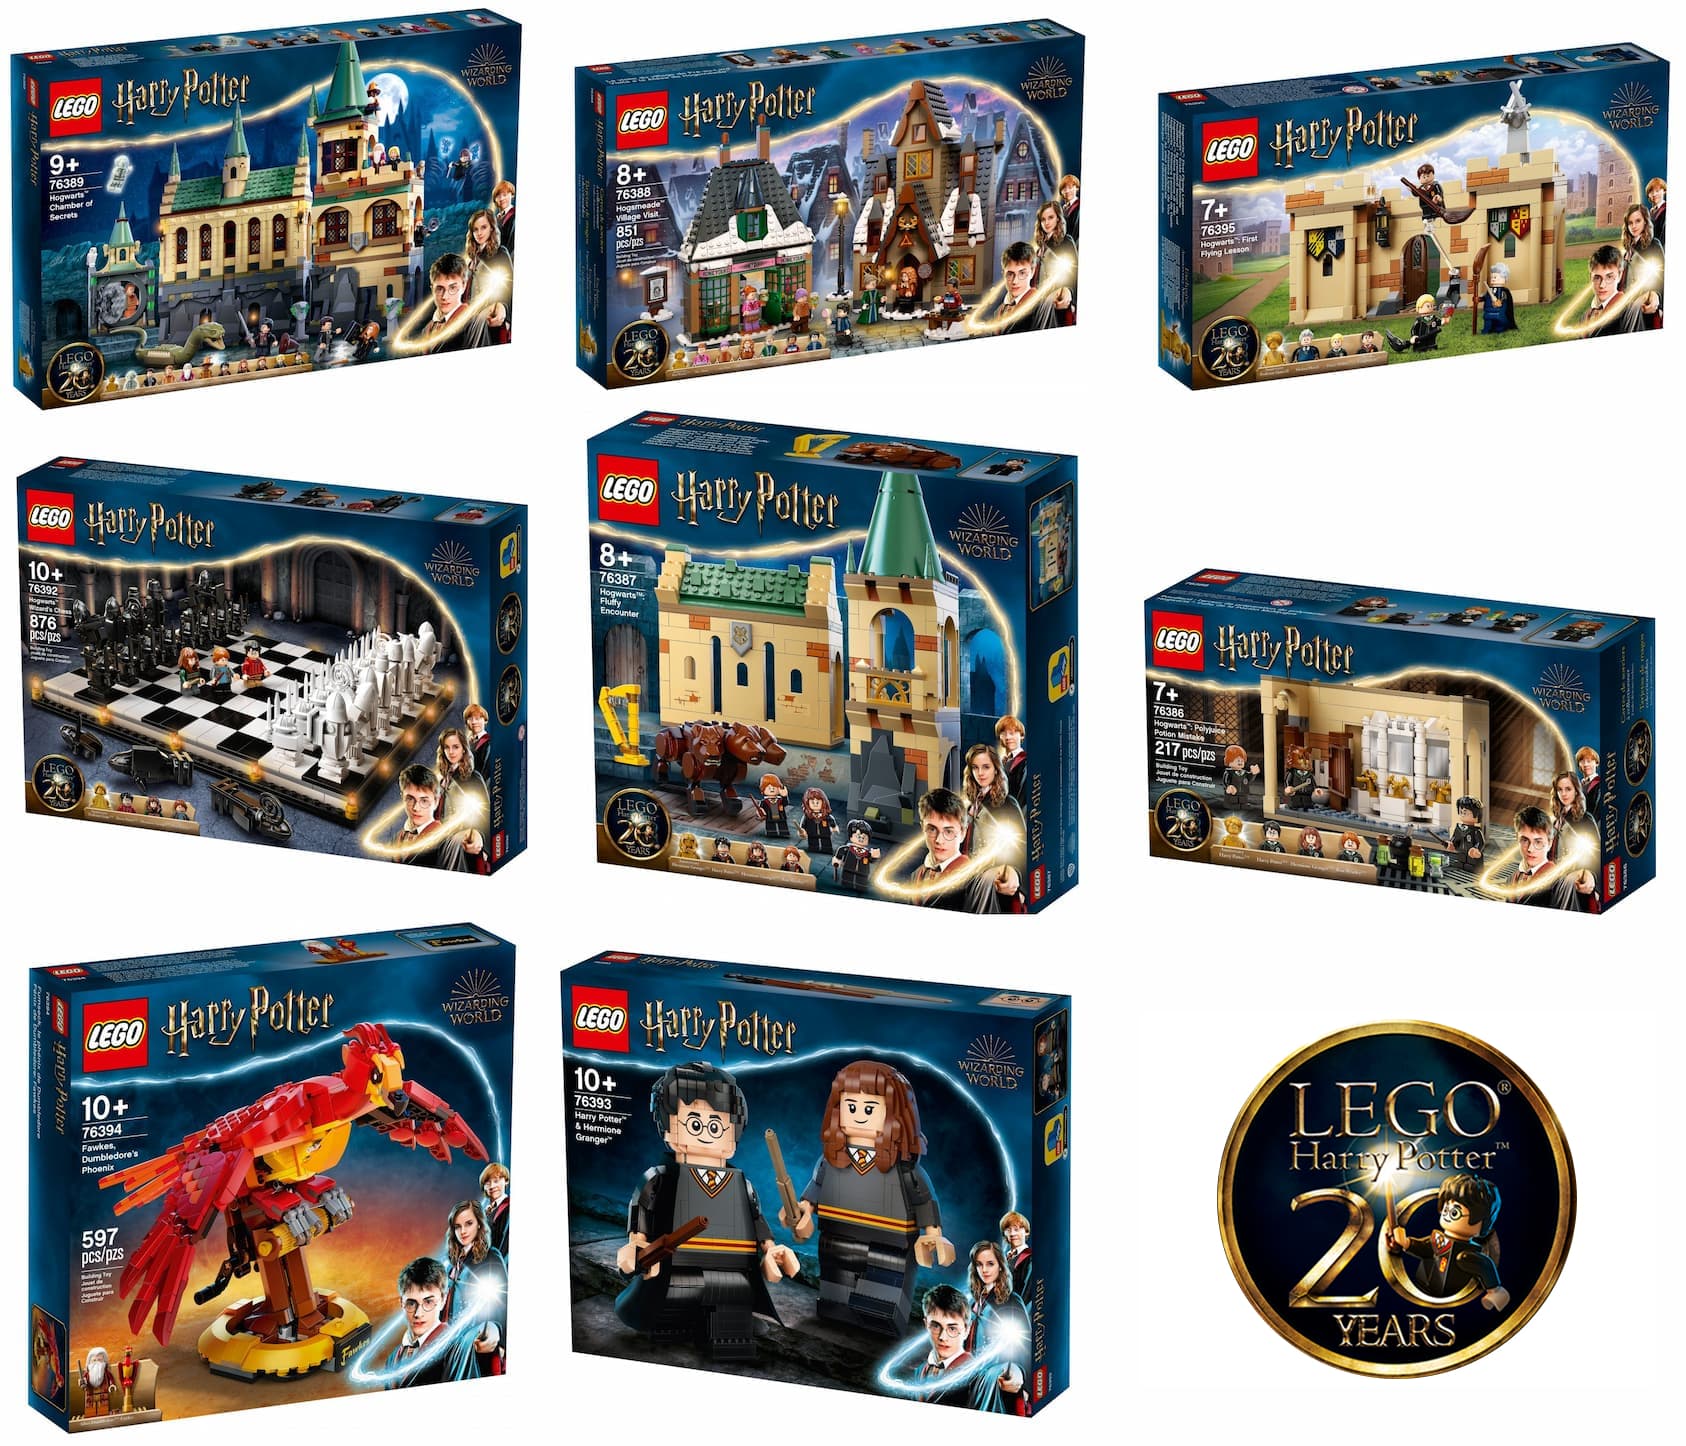 Aberto até de Madrugada: Novos sets LEGO Harry Potter